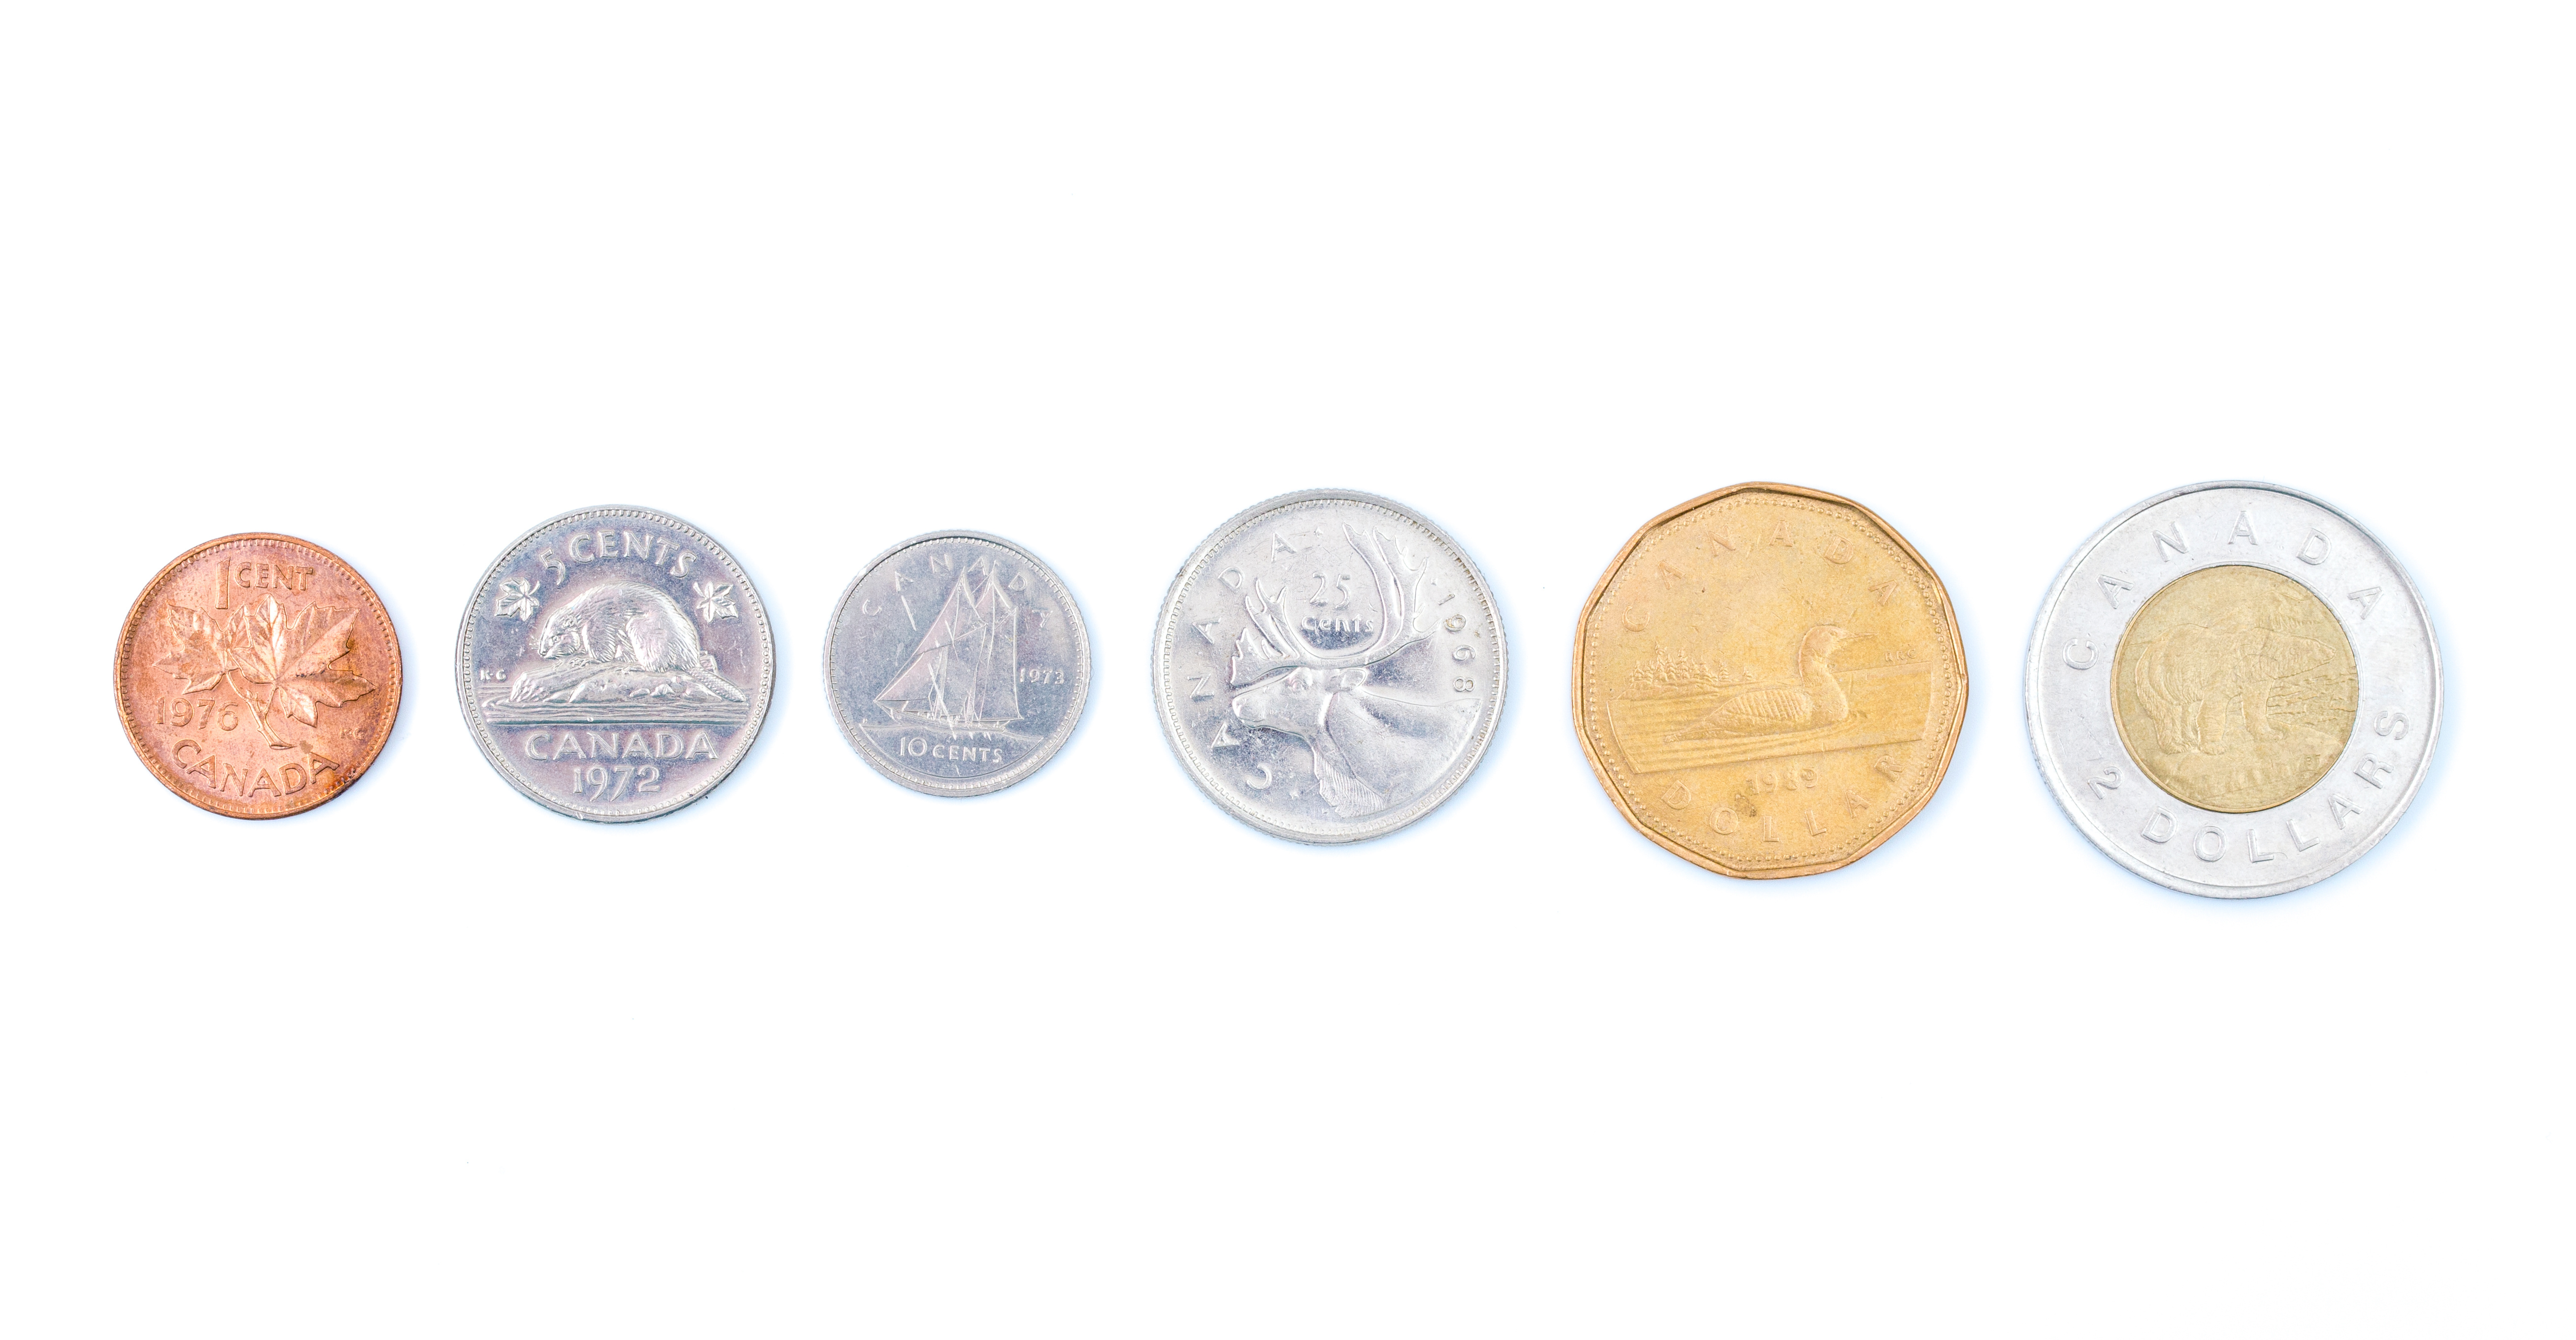 Le monete del Canada sono prodotte dalla Royal Canadian Mint e denominate in dollari canadesi ($) e nella sottounità di dollari, i centesimi (¢).